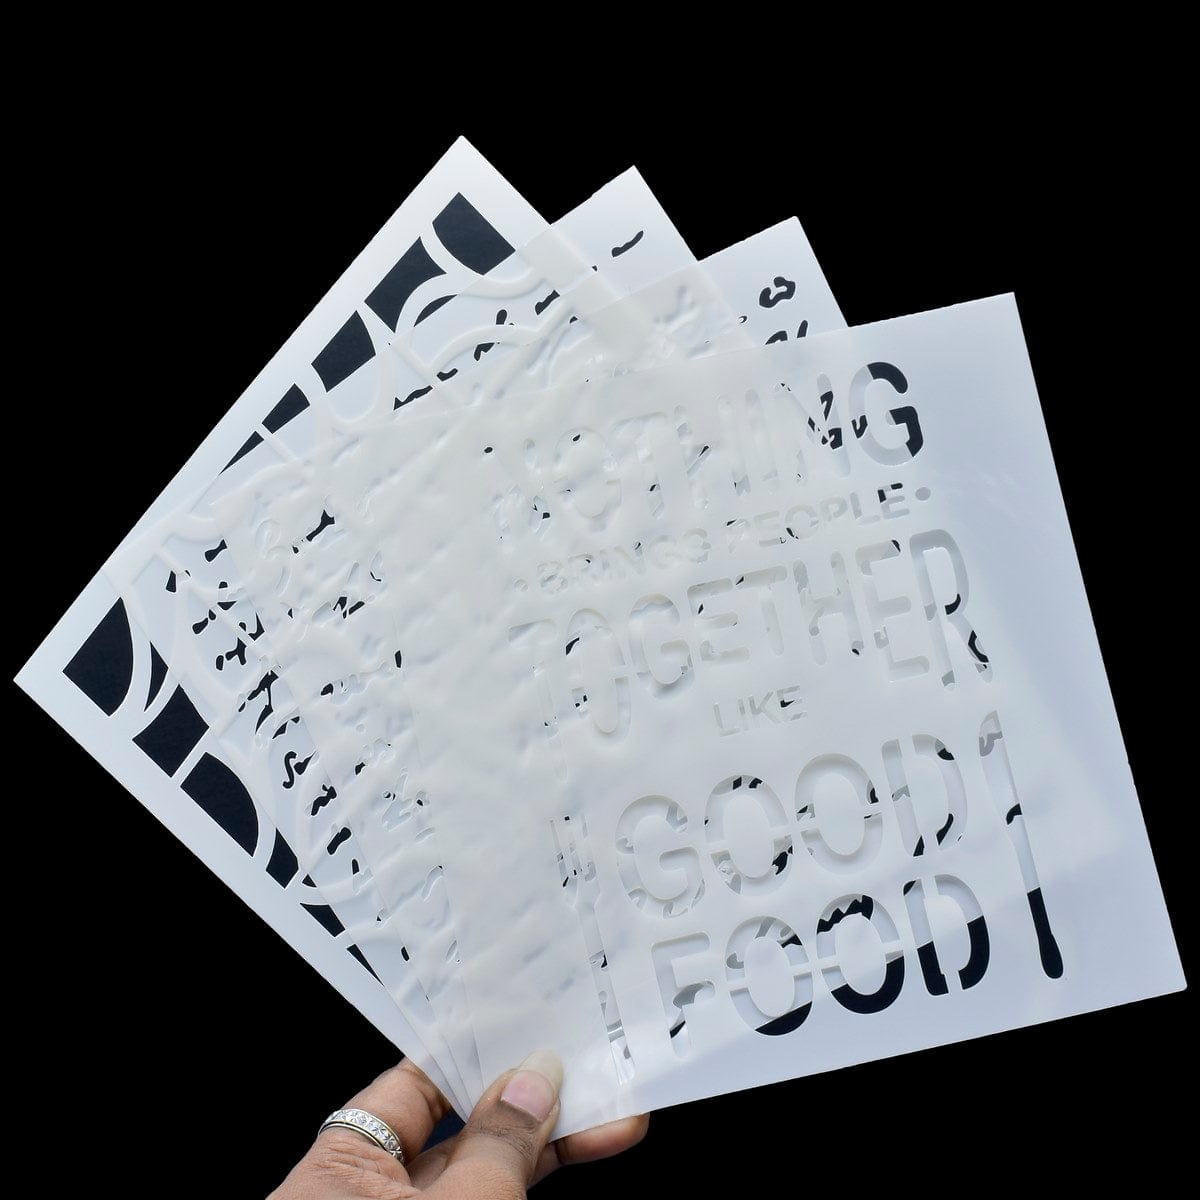 jags-mumbai Stickers Stencil Plastic 6x6 4Pcs